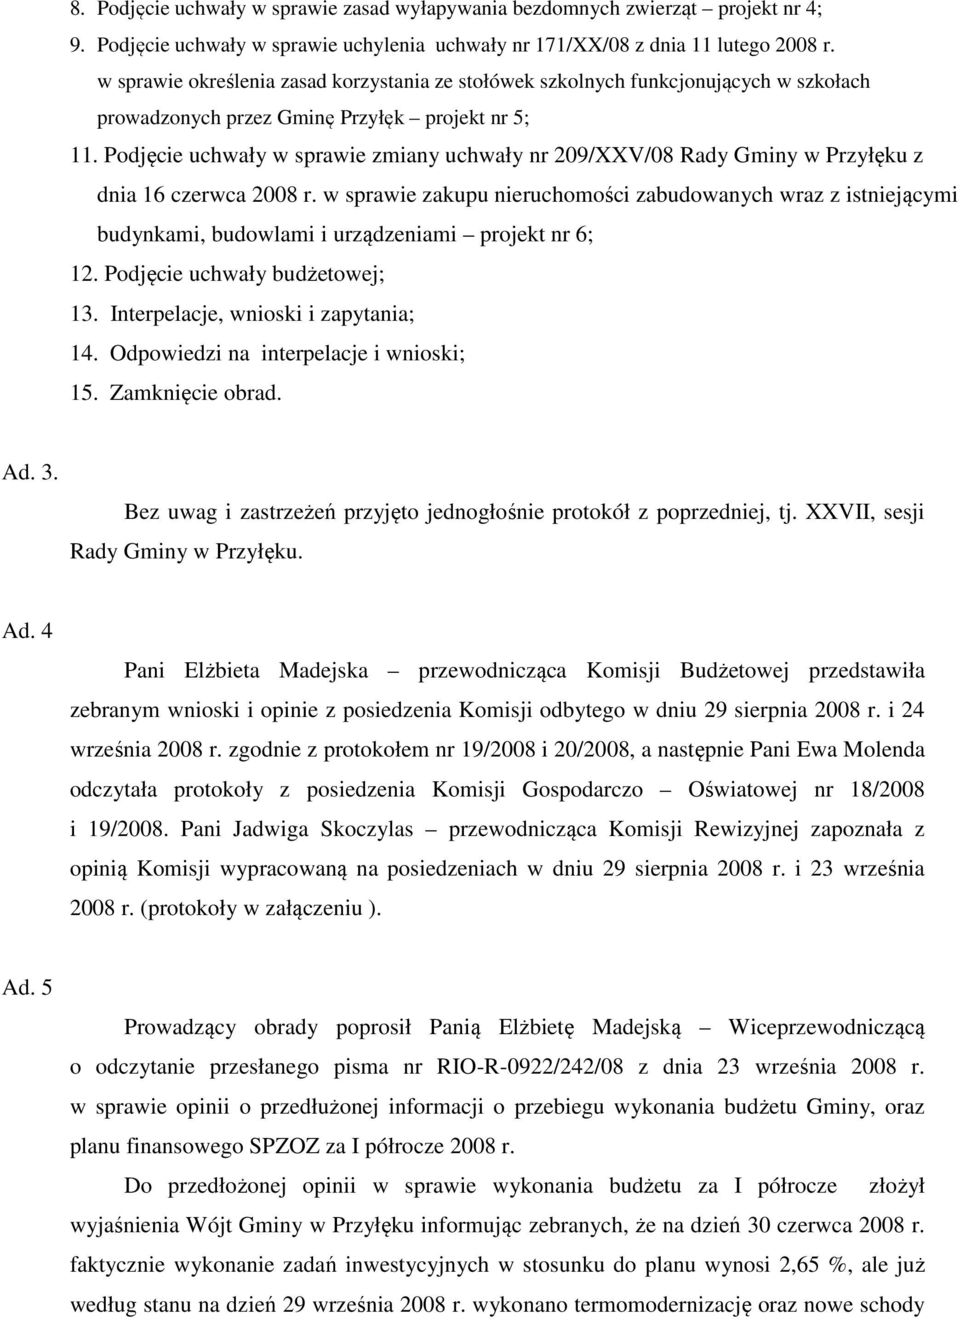 Podjęcie uchwały w sprawie zmiany uchwały nr 209/XXV/08 Rady Gminy w Przyłęku z dnia 16 czerwca 2008 r.